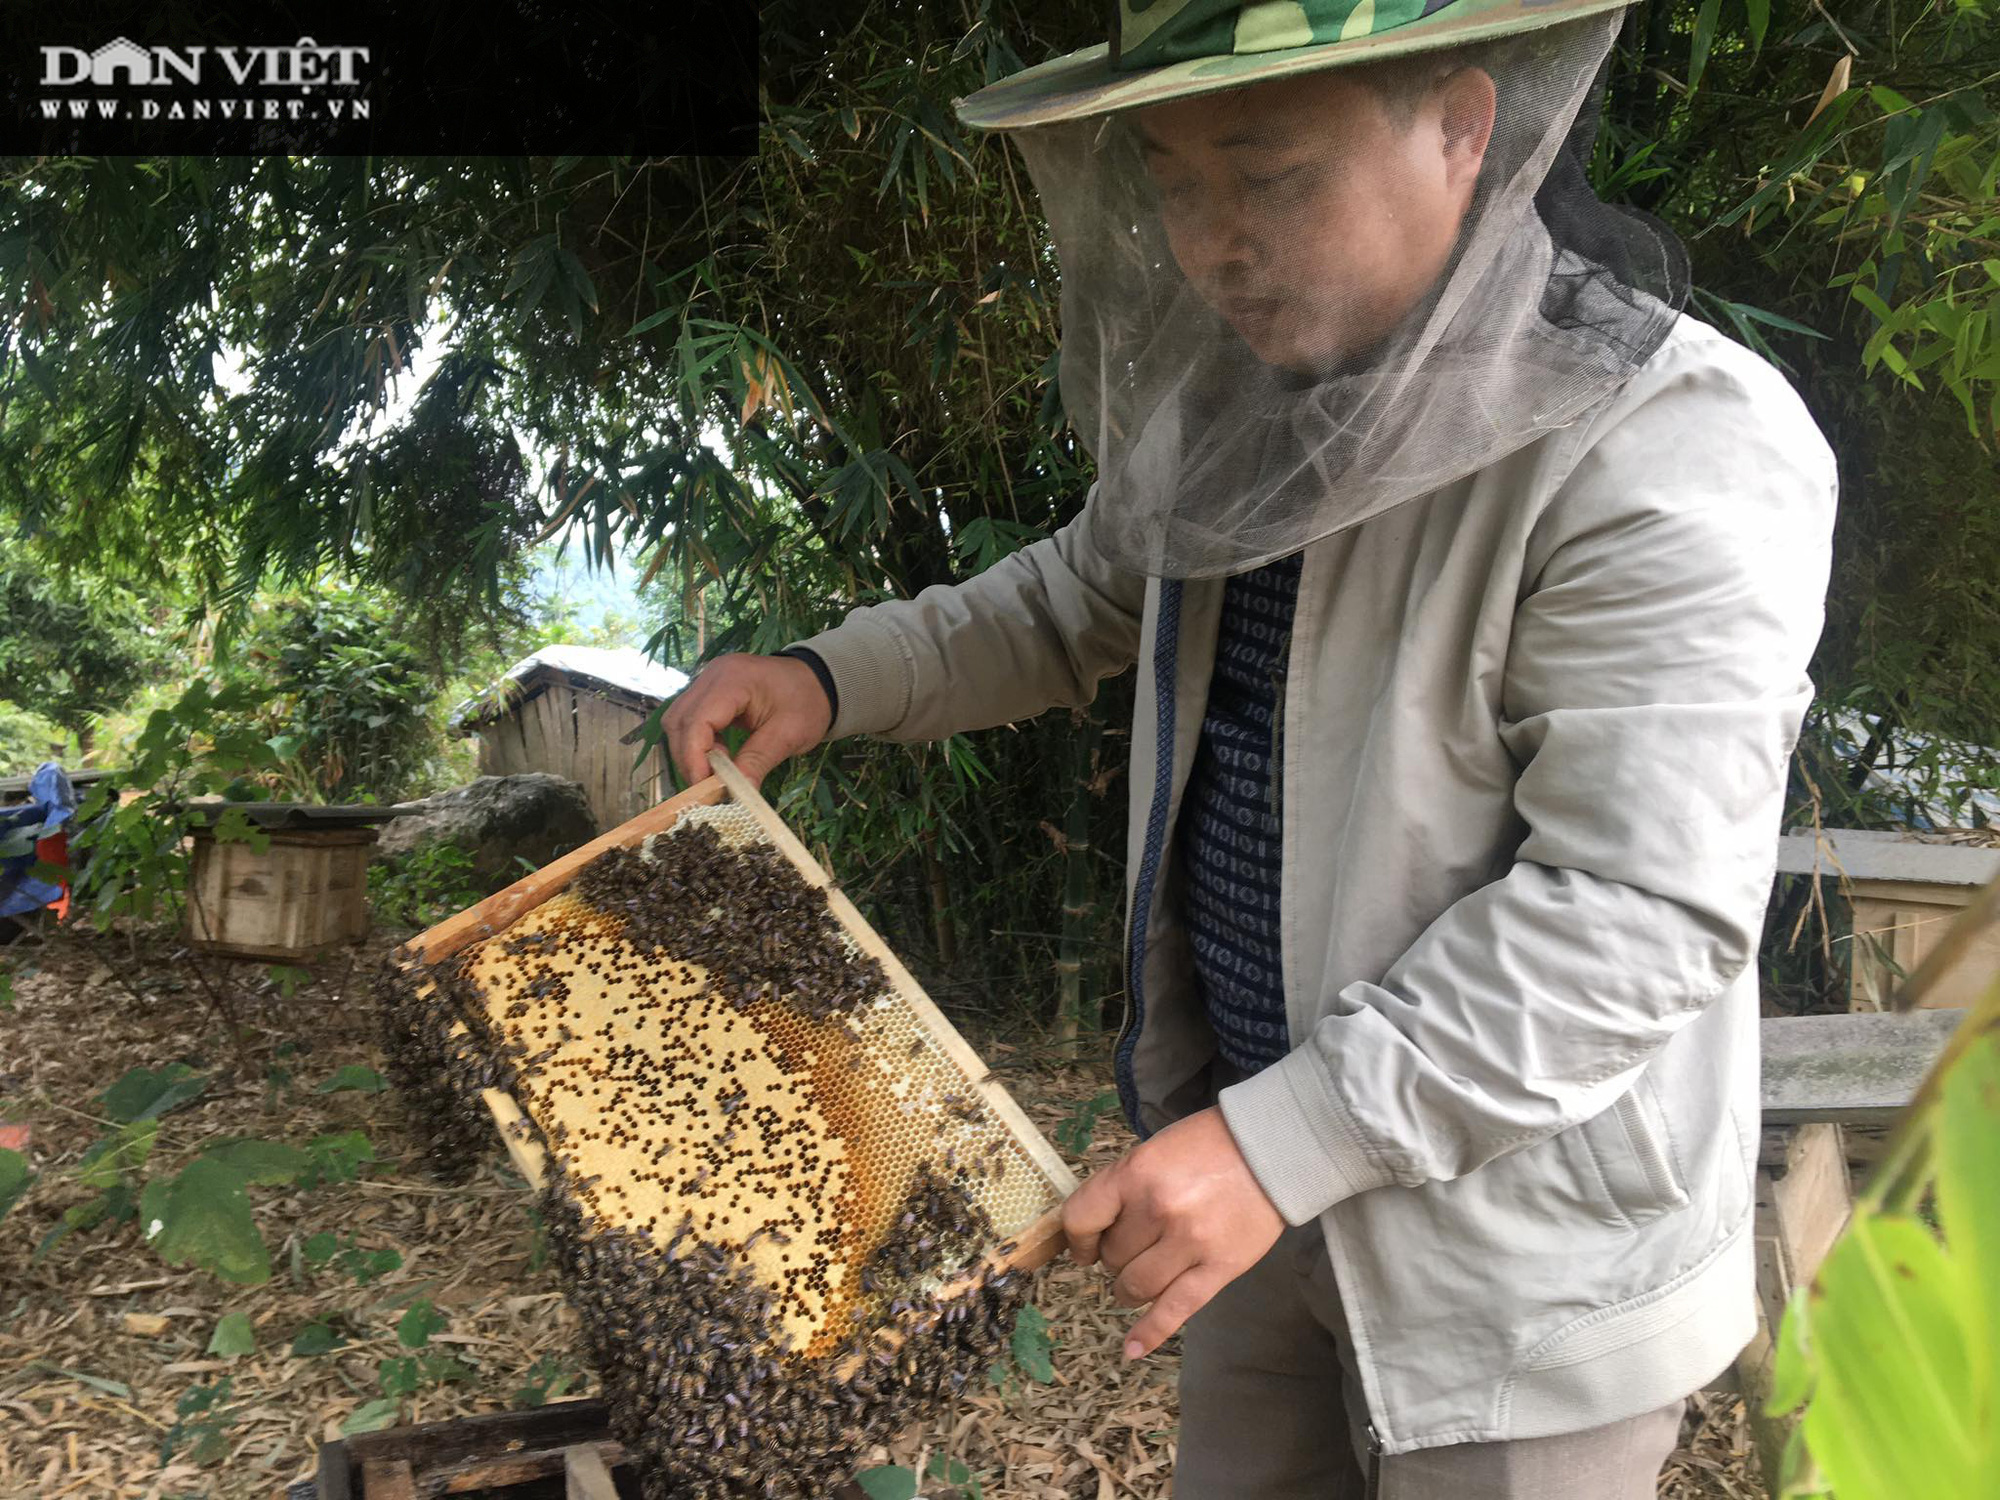 Thị trường Mỹ mua rất nhiều mật ong của Việt Nam để làm gì? - Ảnh 1.